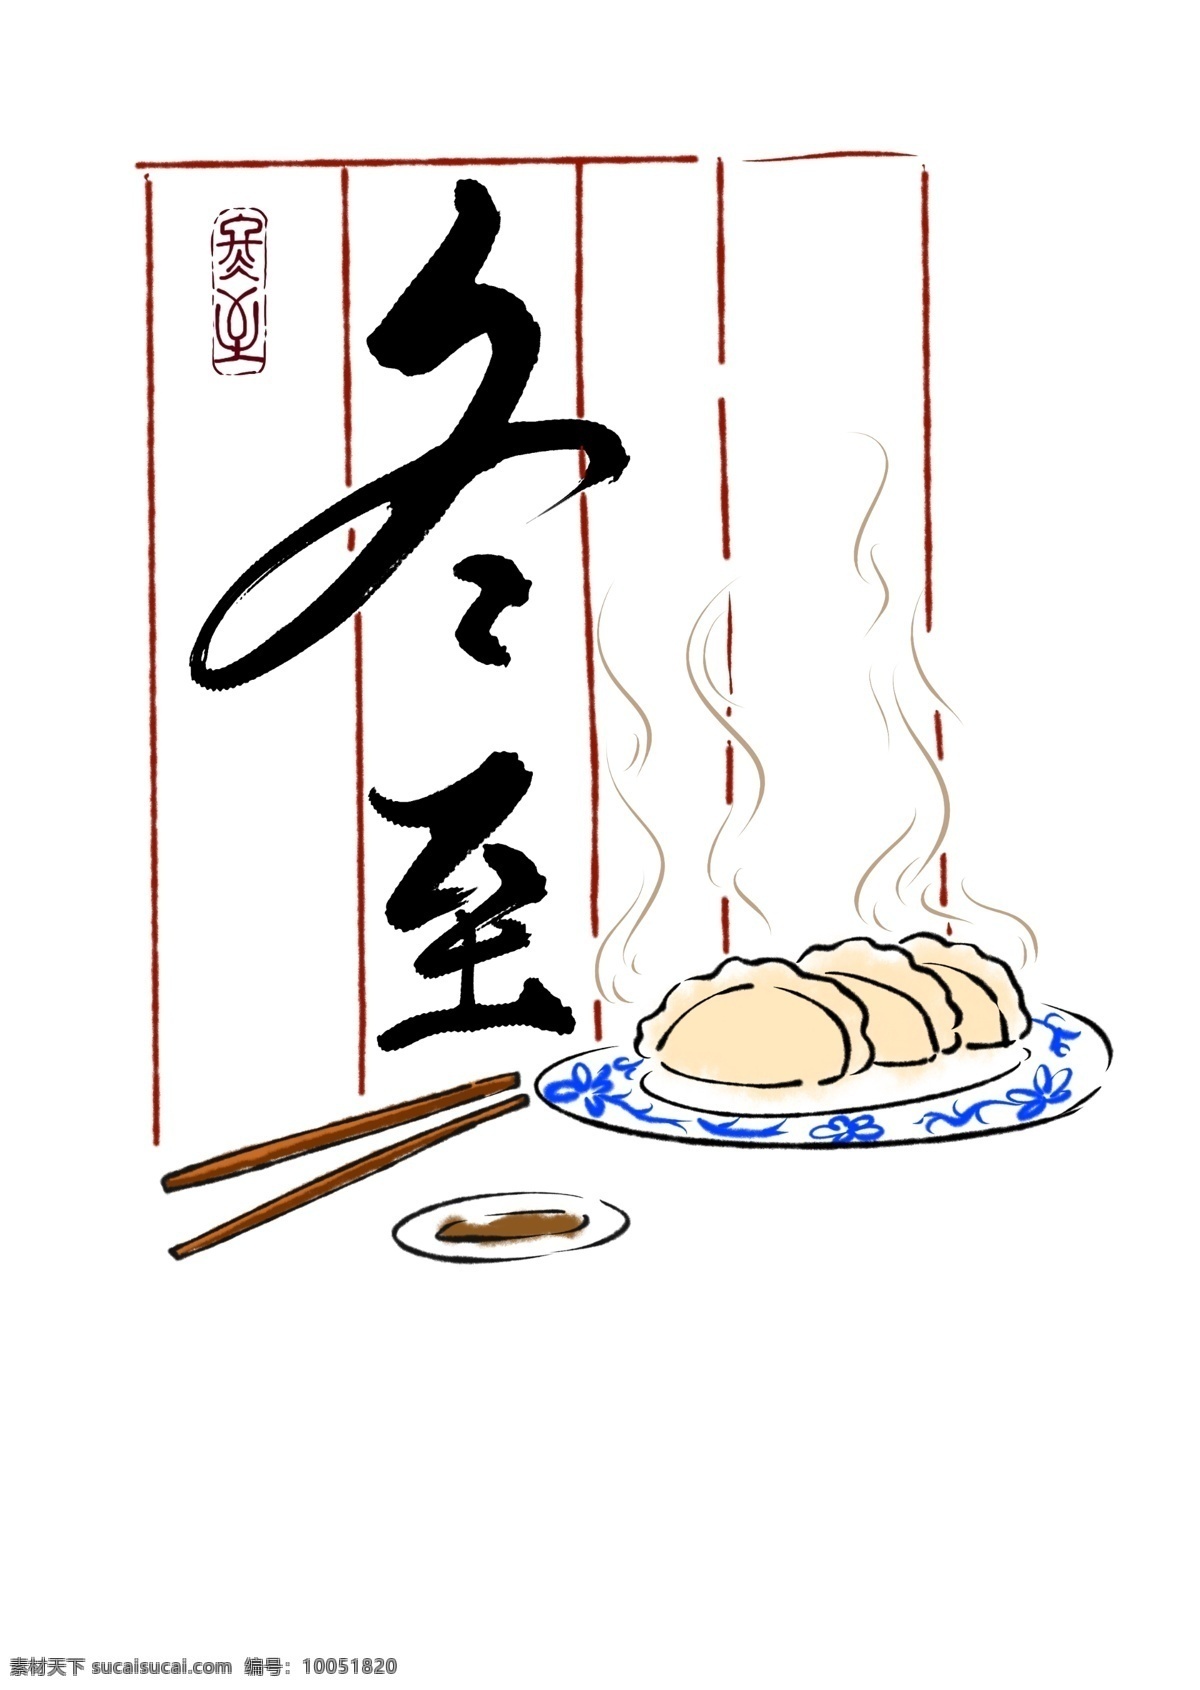 冬至 传统节日 节气 饺子 书法 传统 文化艺术 绘画书法